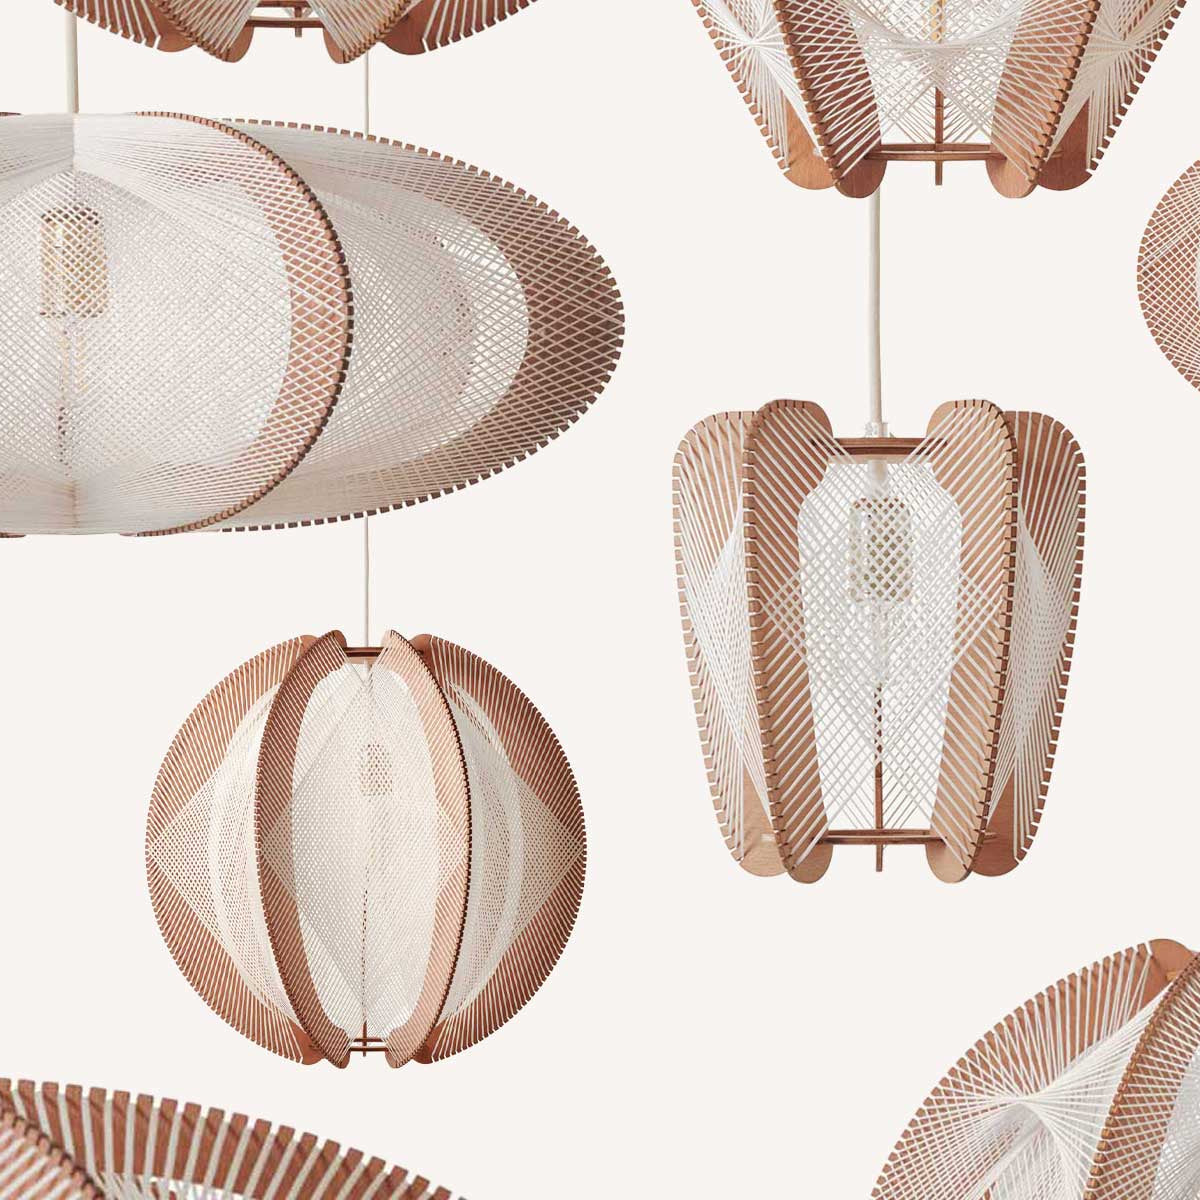 Collection de luminaires design, d'inspiration scandinave, faite main, en matériaux nobles, pour une décoration intérieure eco-responsable